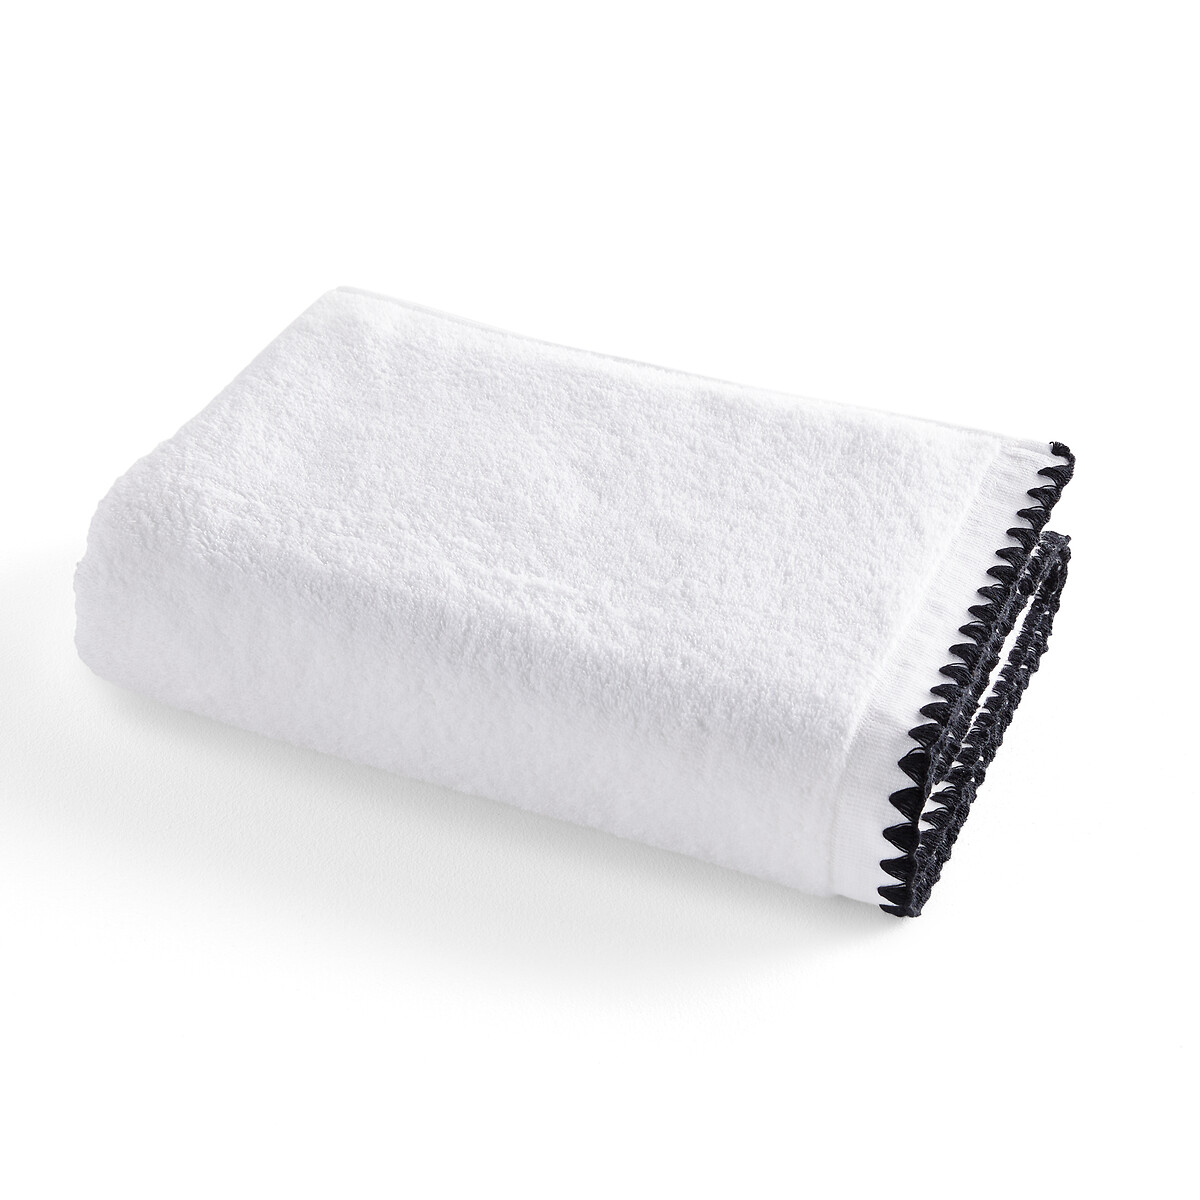 Полотенце банное с вышивкой из махровой ткани 500 г Merida  70 x 140 см белый LaRedoute, размер 70 x 140 см